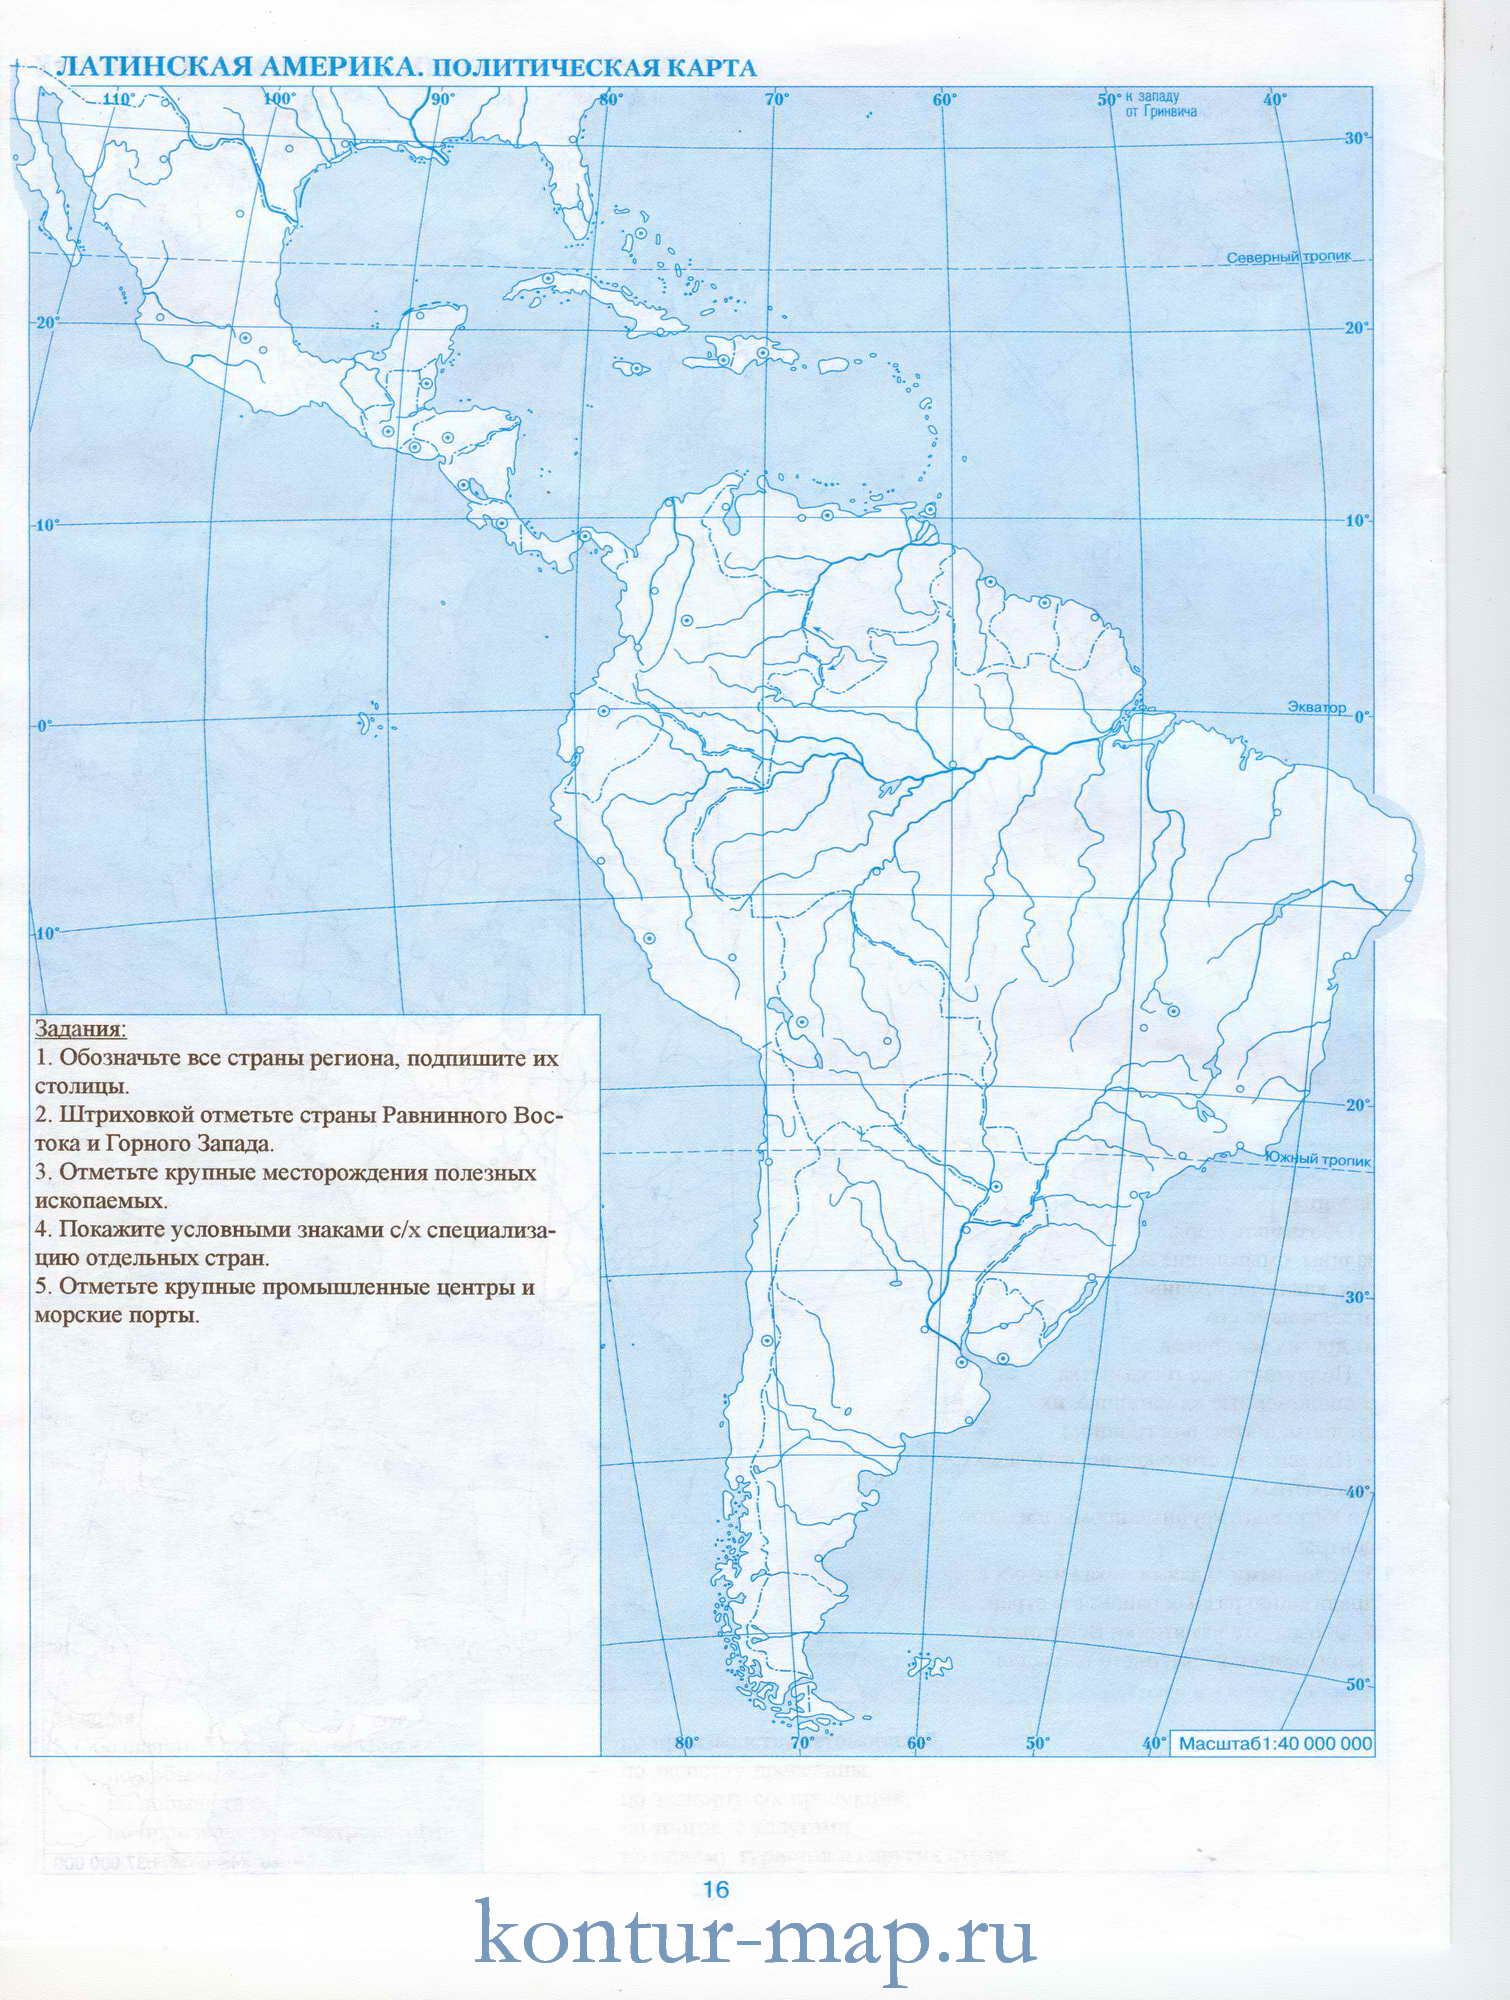 Контурная карта Южной Америки. Политическая контурная карта ЛатинскойАмерики. Задания для контурной карты Южной Америки, A0 -